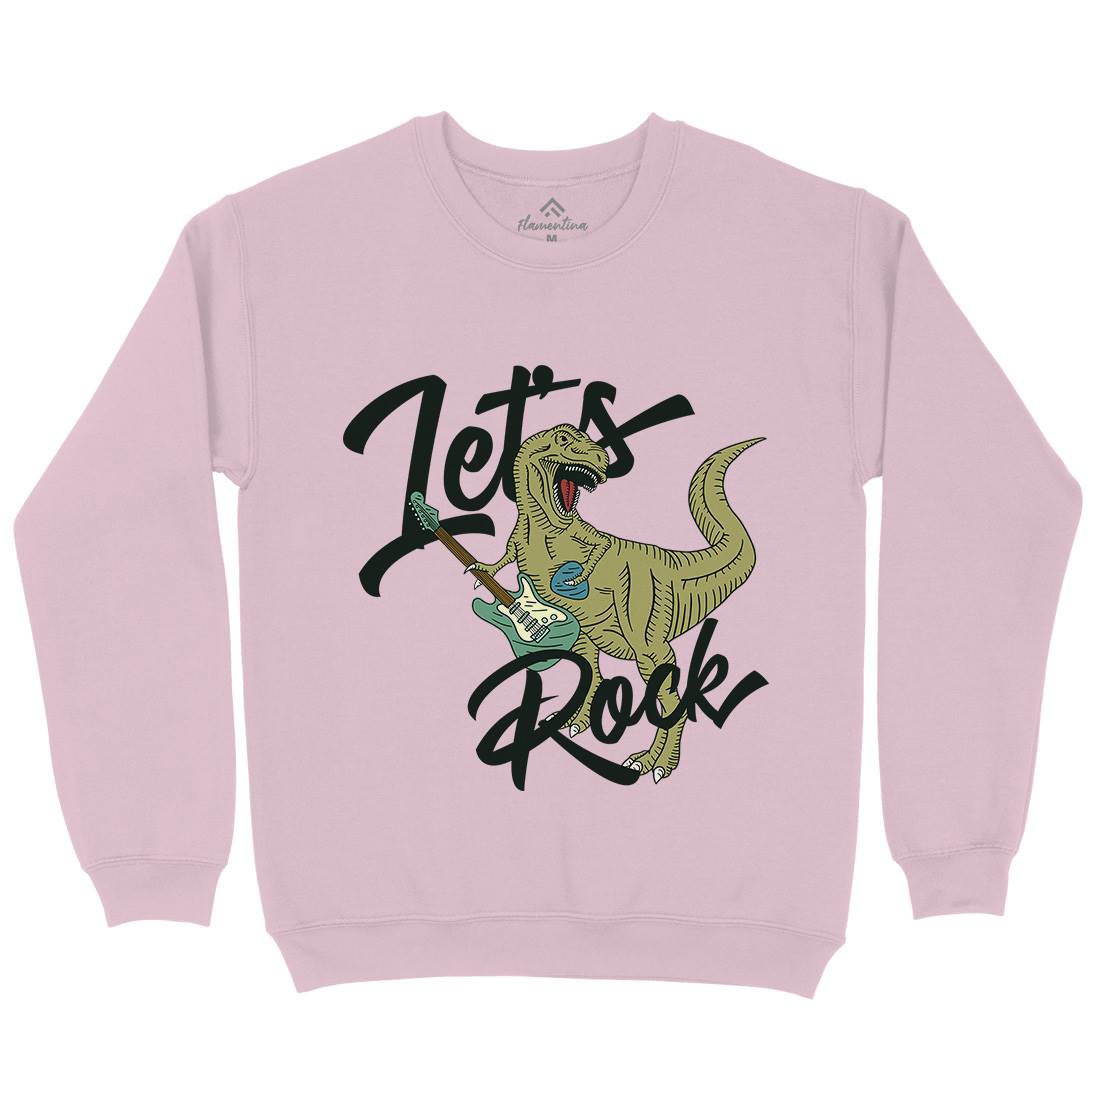 Let&#39;s Rock Kids Crew Neck Sweatshirt Music B363